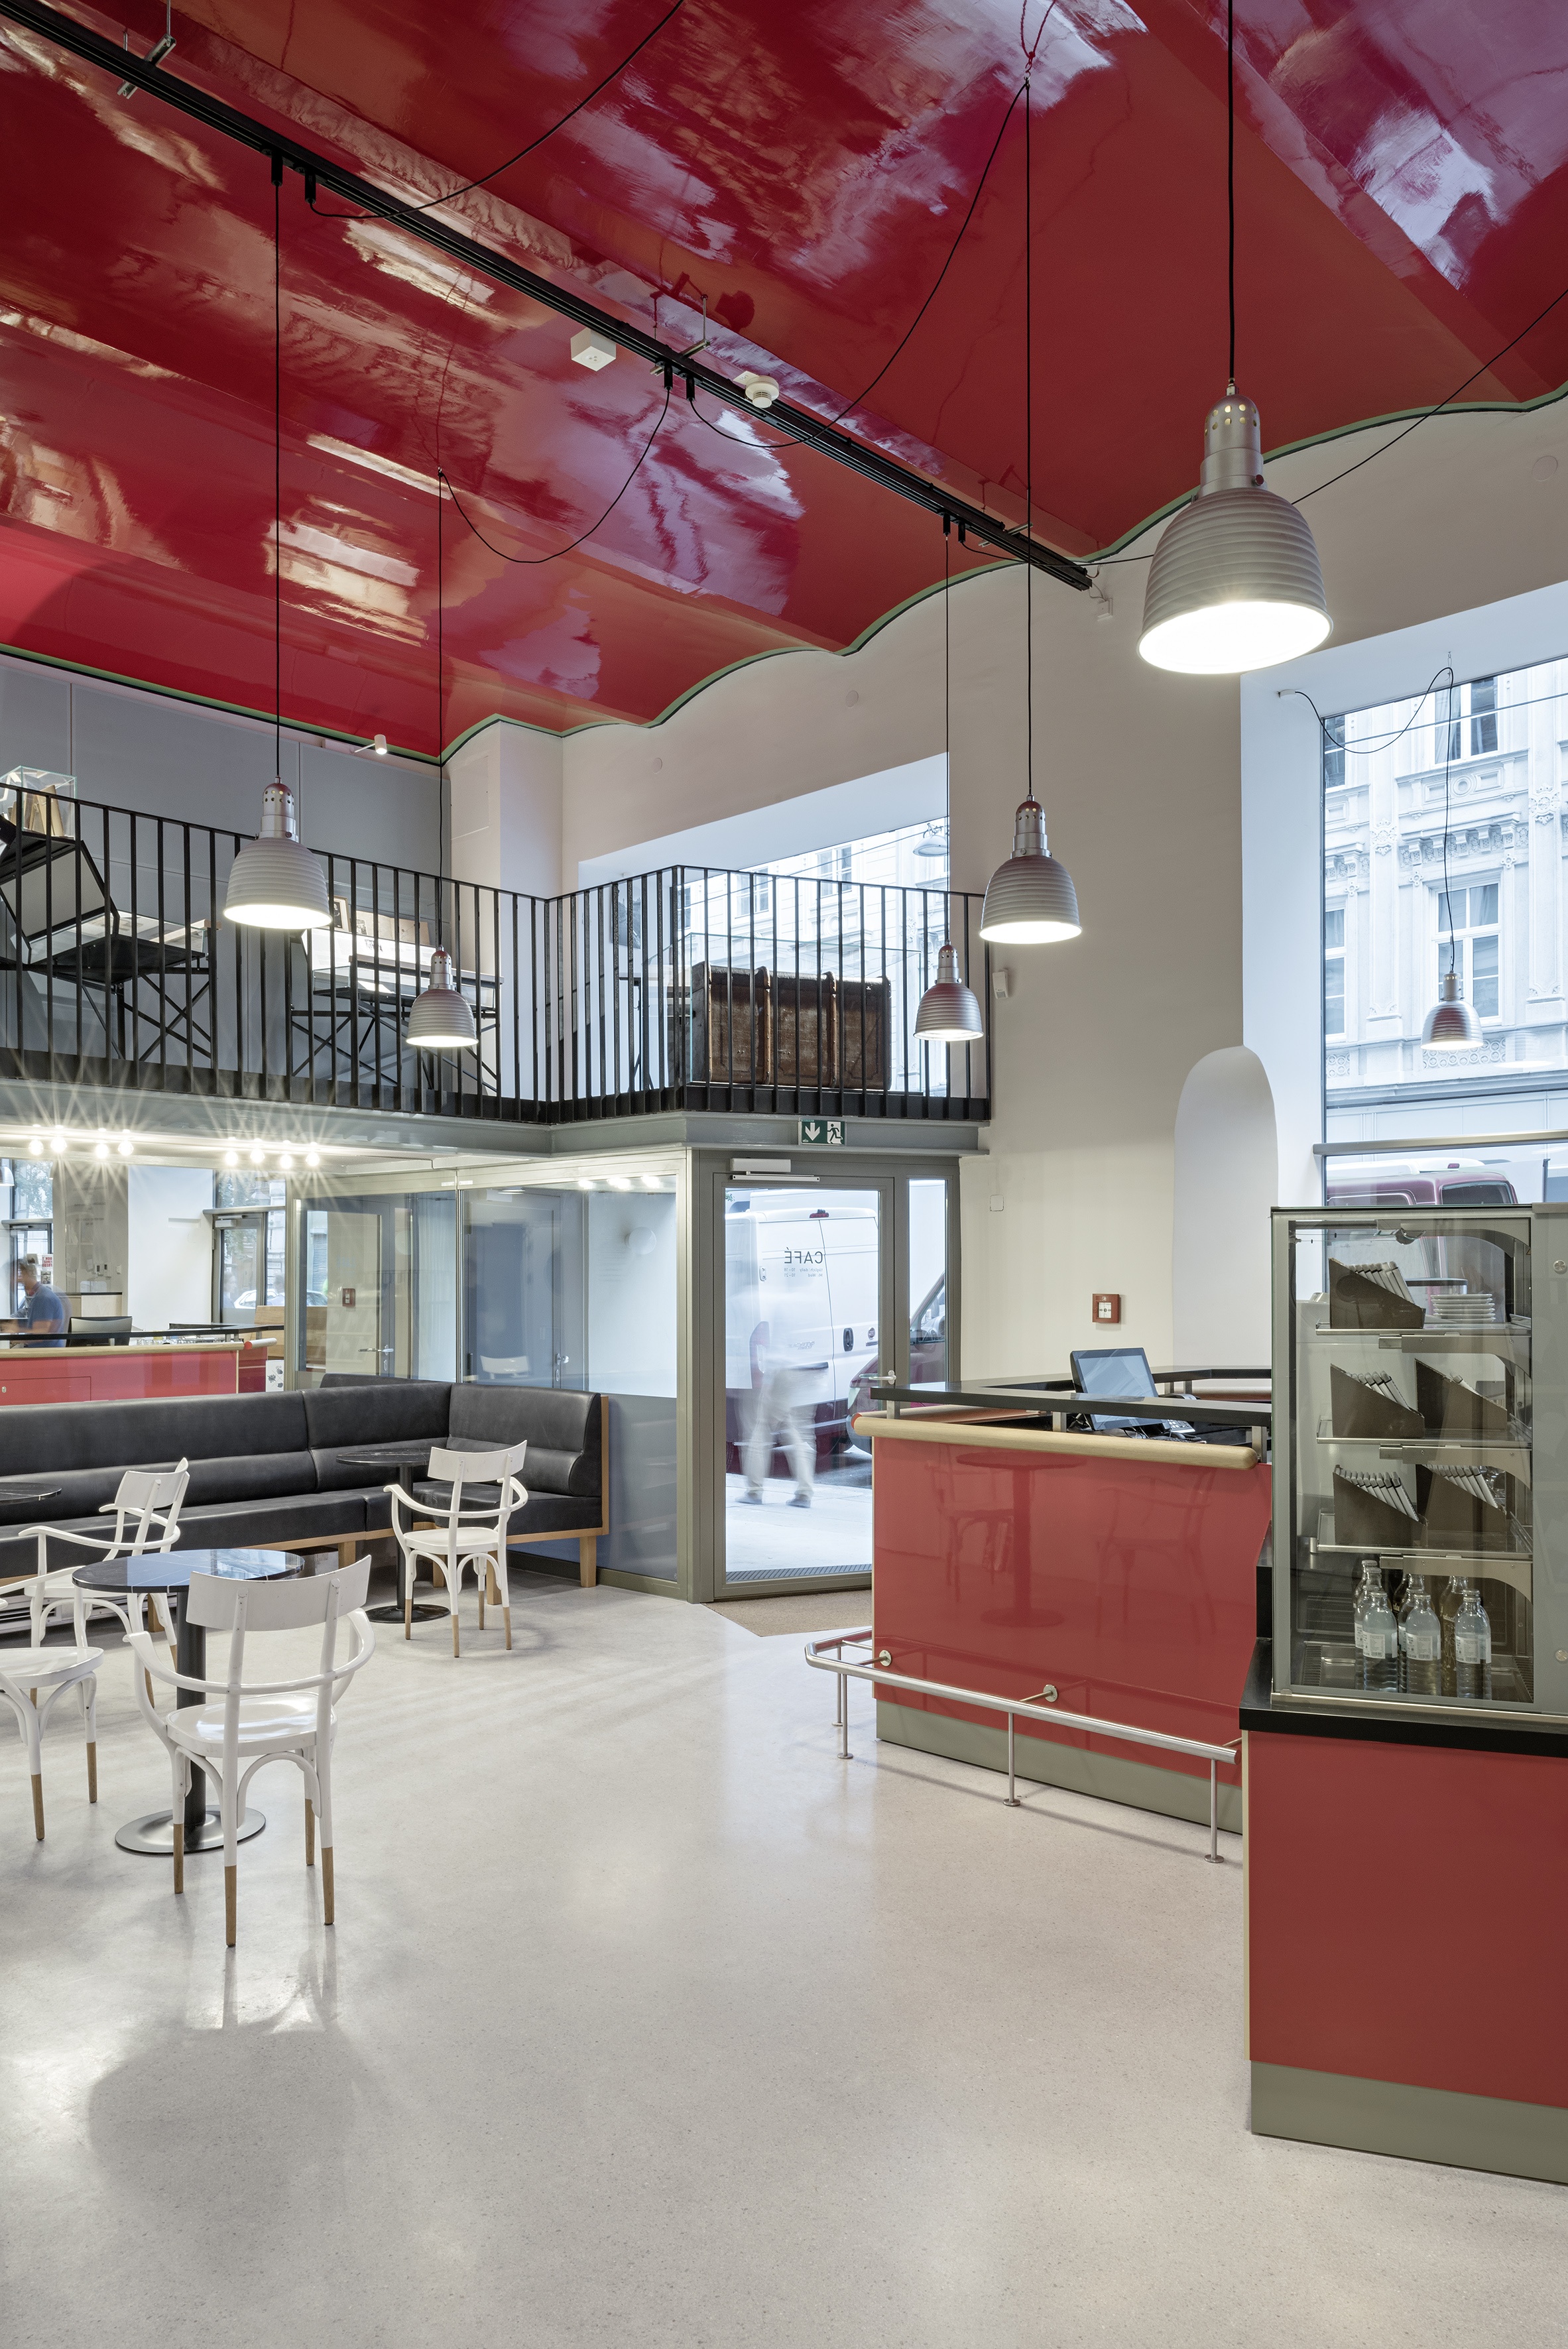 Фойе и кафе и в новом музее Зигмунда Фрейда с красным волнообразным потолком 